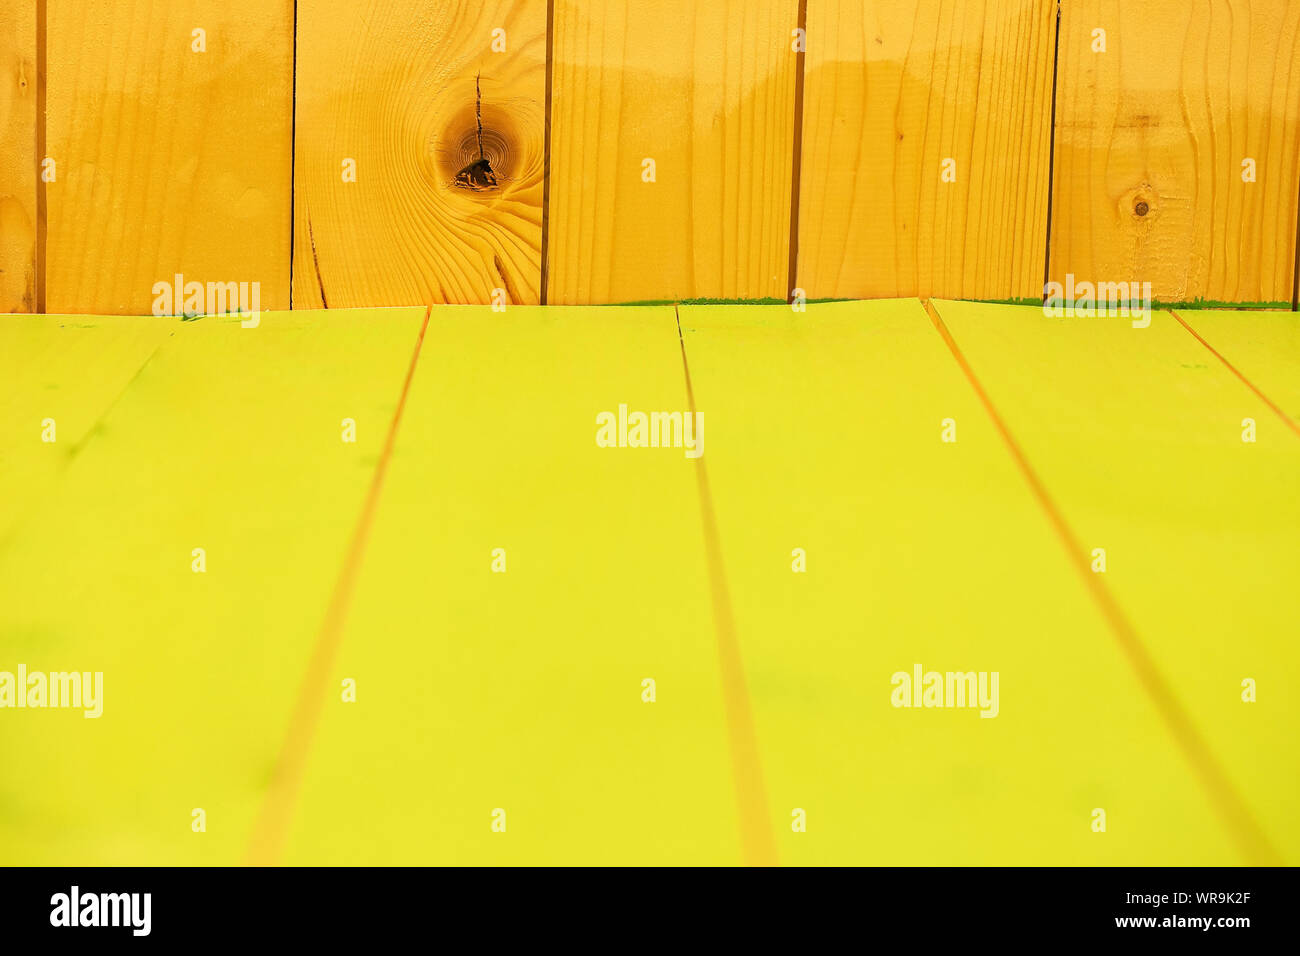 La superficie de la tabla de color amarillo por paredes de madera Foto de stock